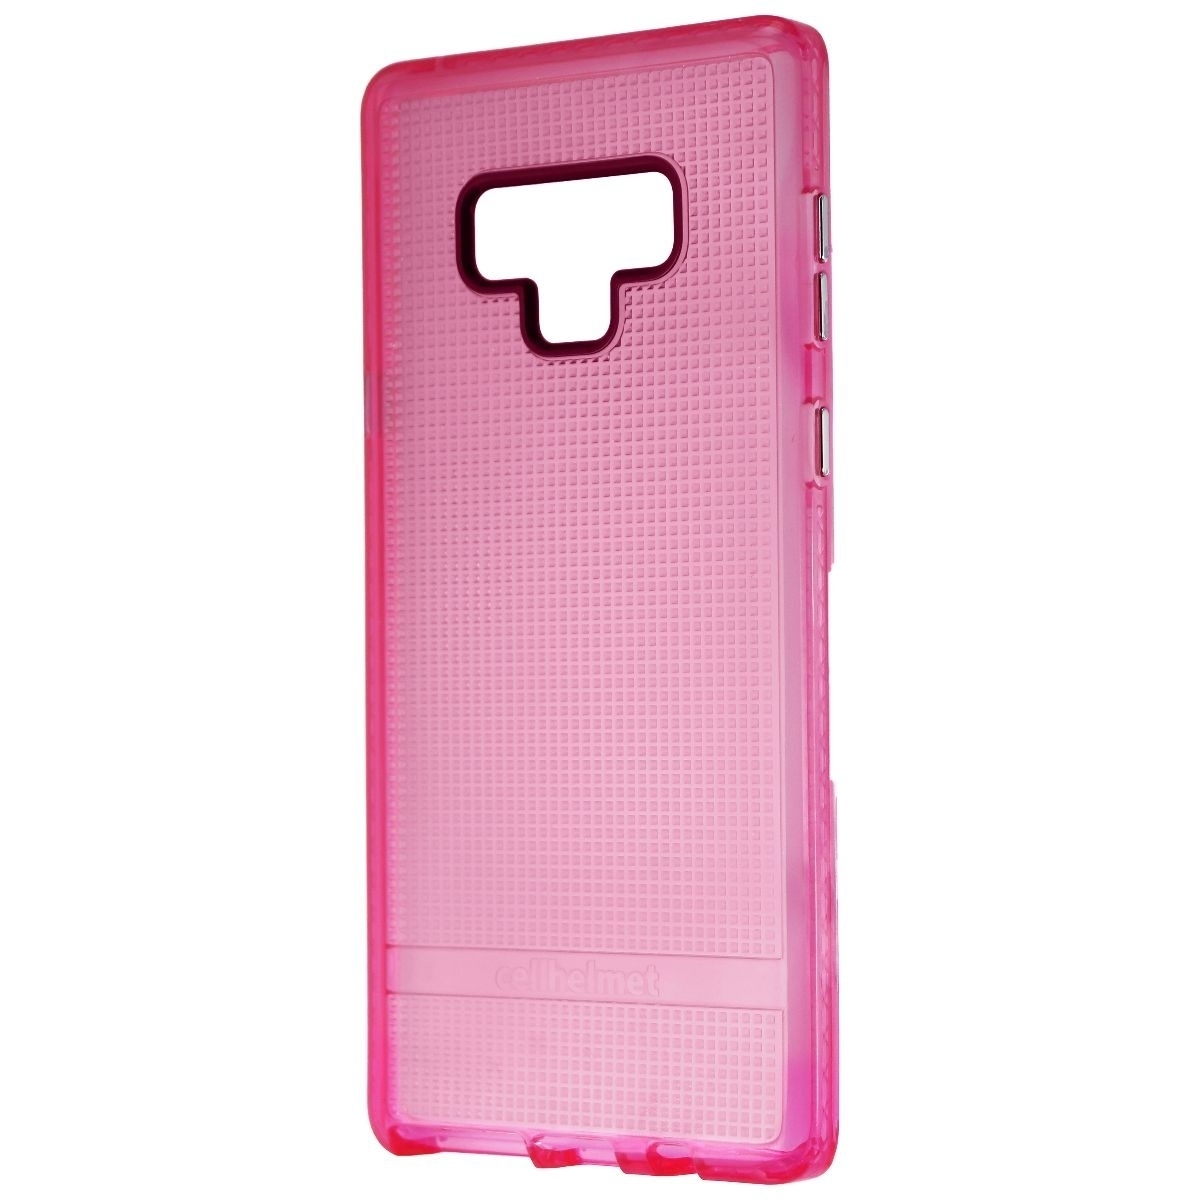 CellHelmet Altitude X PRO Series Gel Case For Samsung Galaxy Note9 - Pink